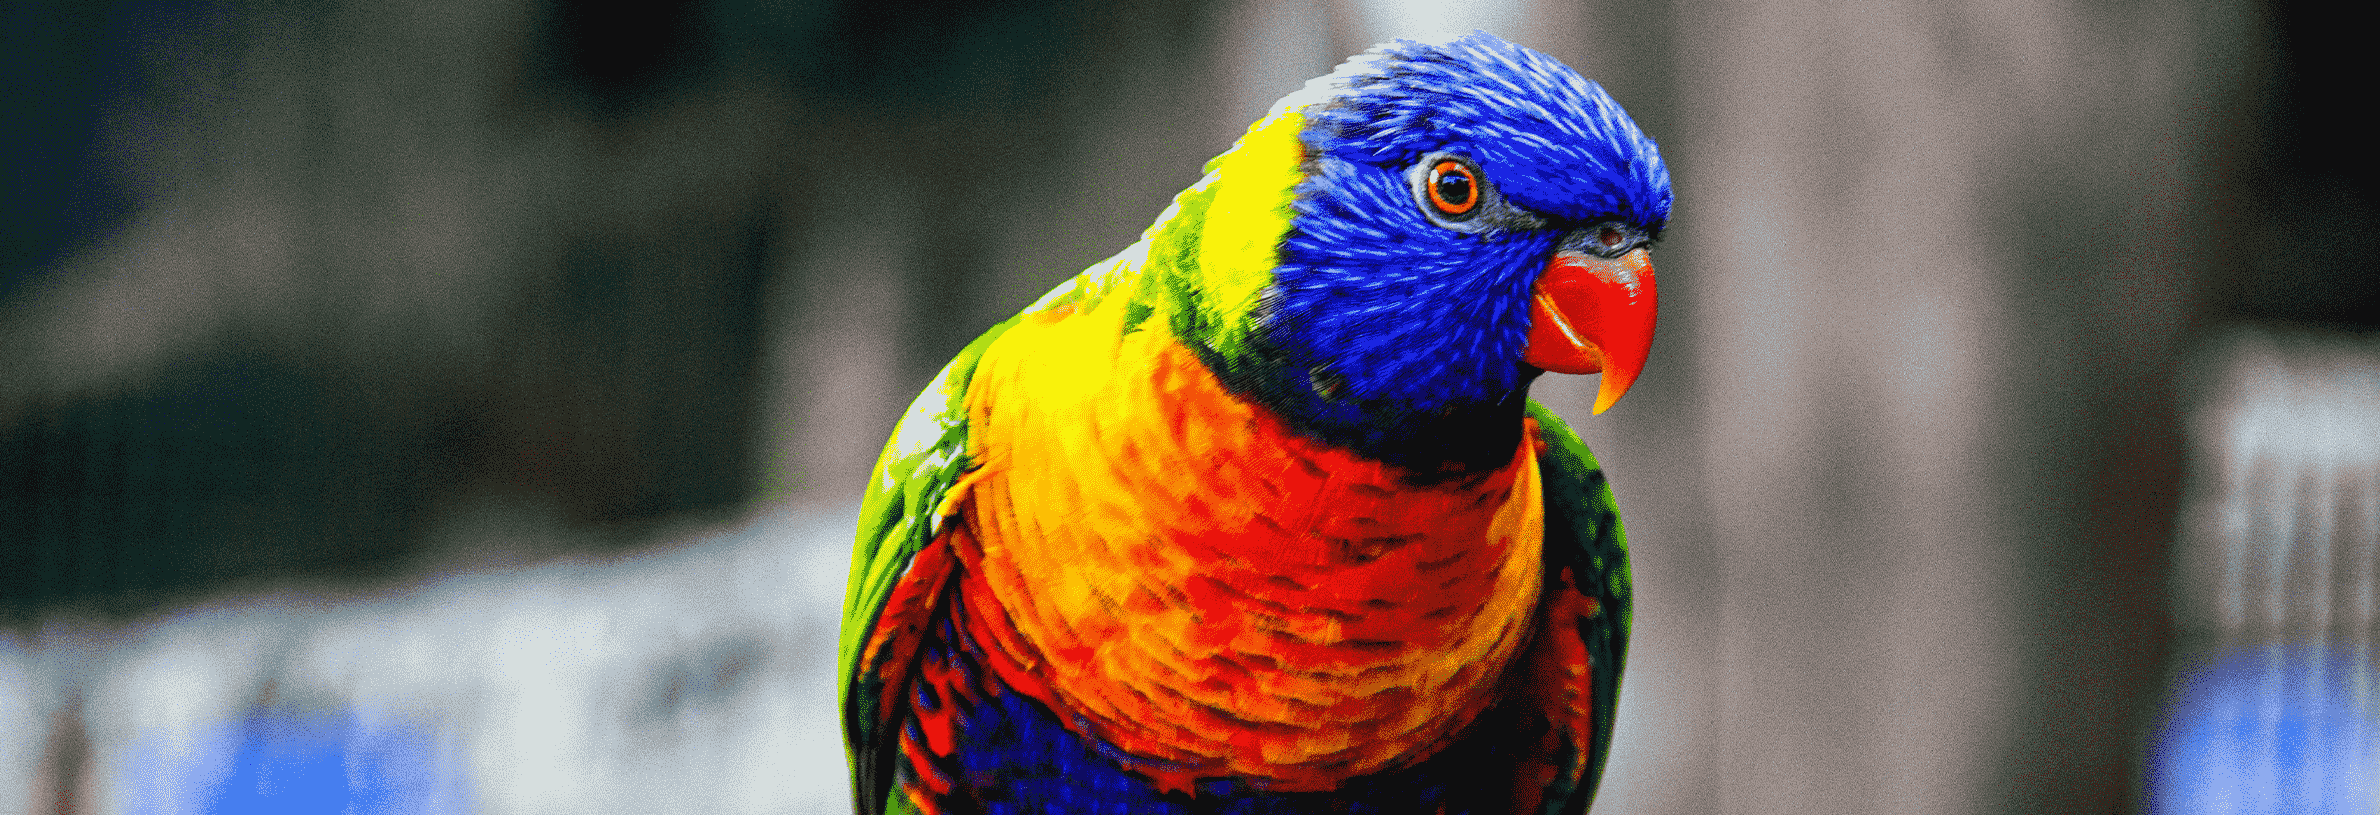 Een papegaai als huisdier: waar moet ik rekening mee houden?